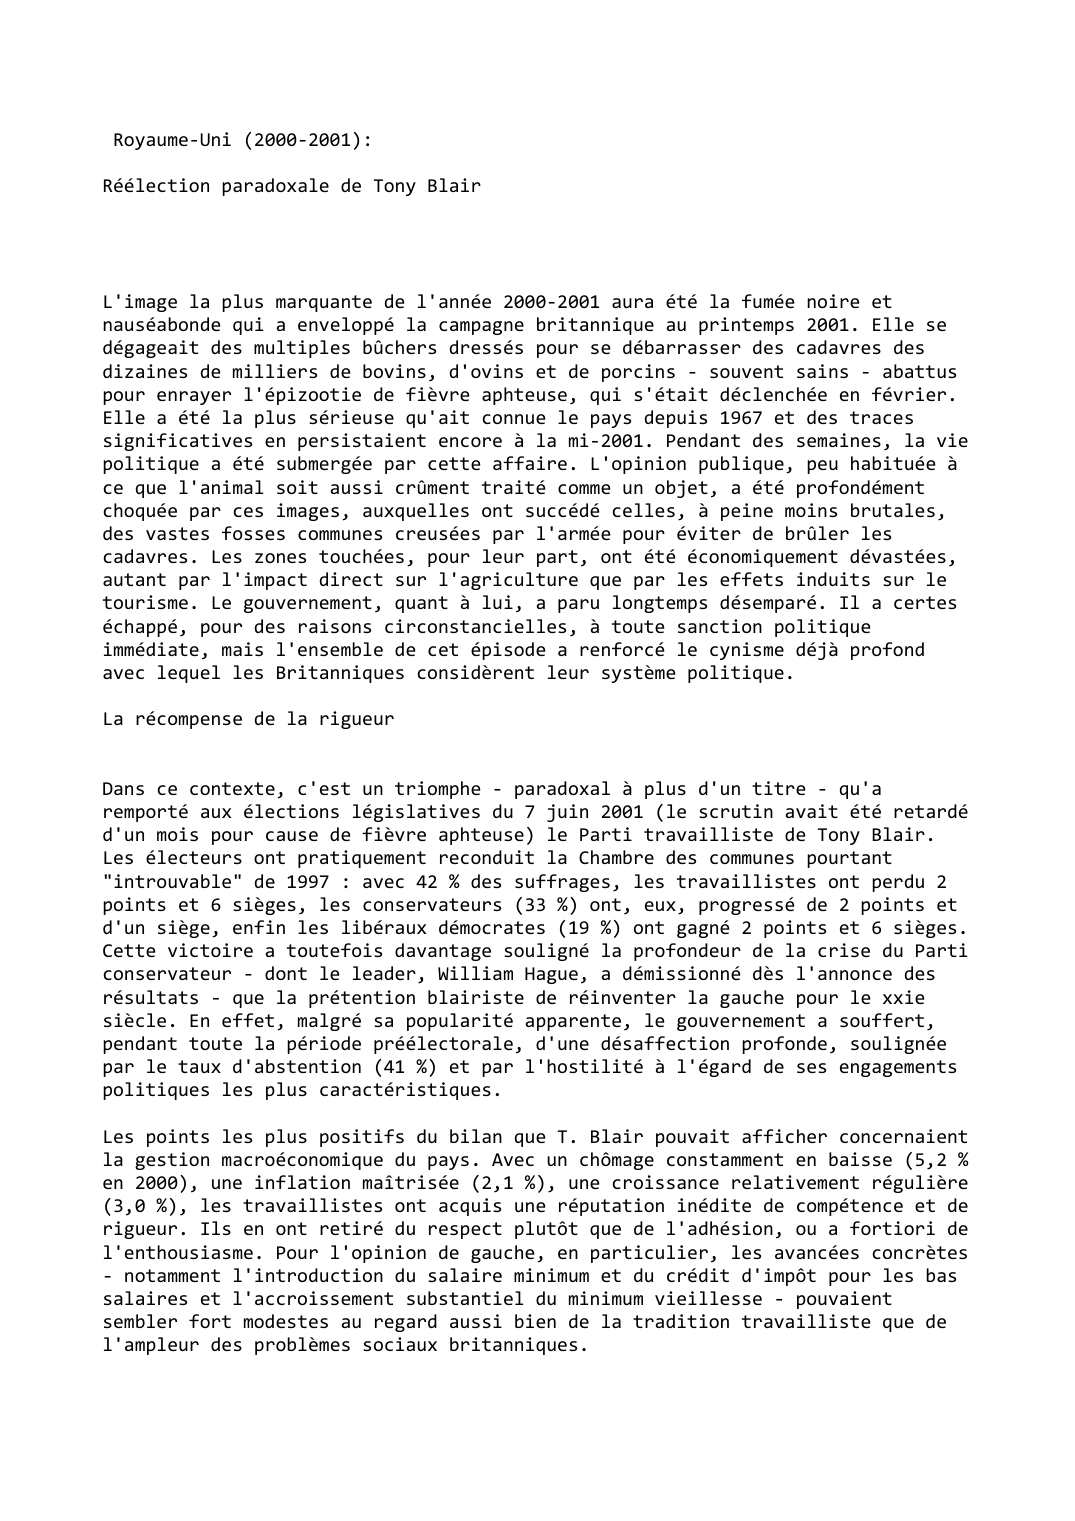 Prévisualisation du document Royaume-Uni (2000-2001):

Réélection paradoxale de Tony Blair